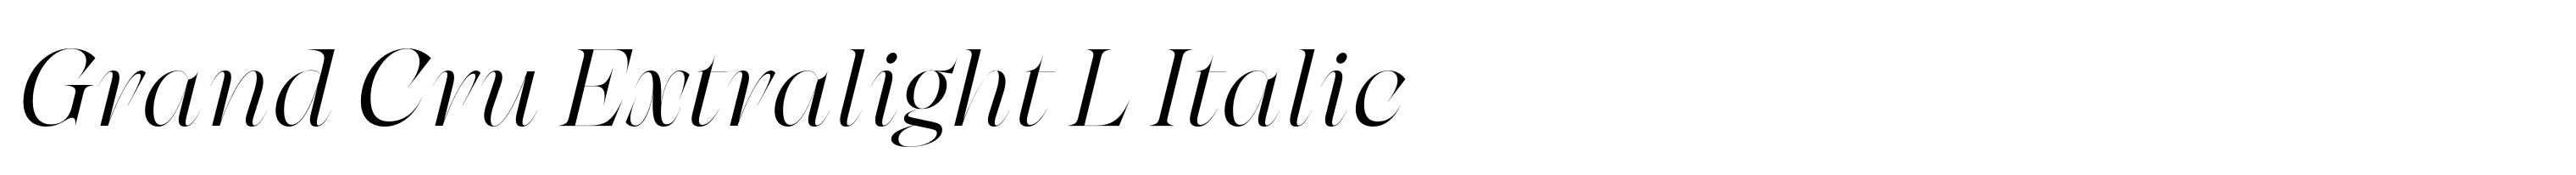 Grand Cru Extralight L Italic